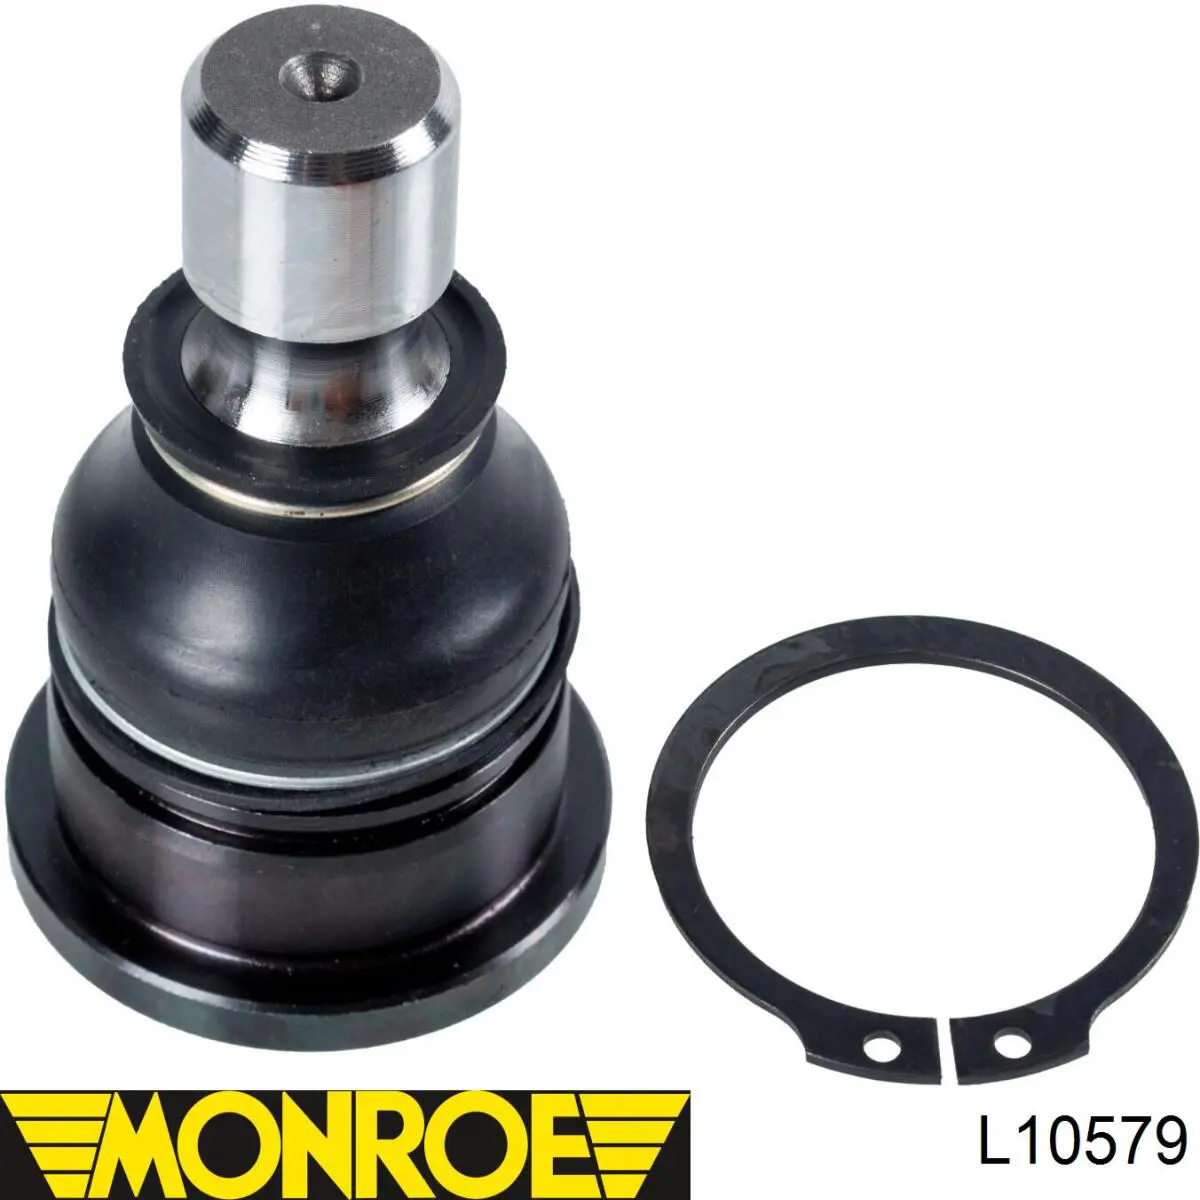 L10579 Monroe barra oscilante, suspensión de ruedas delantera, inferior derecha